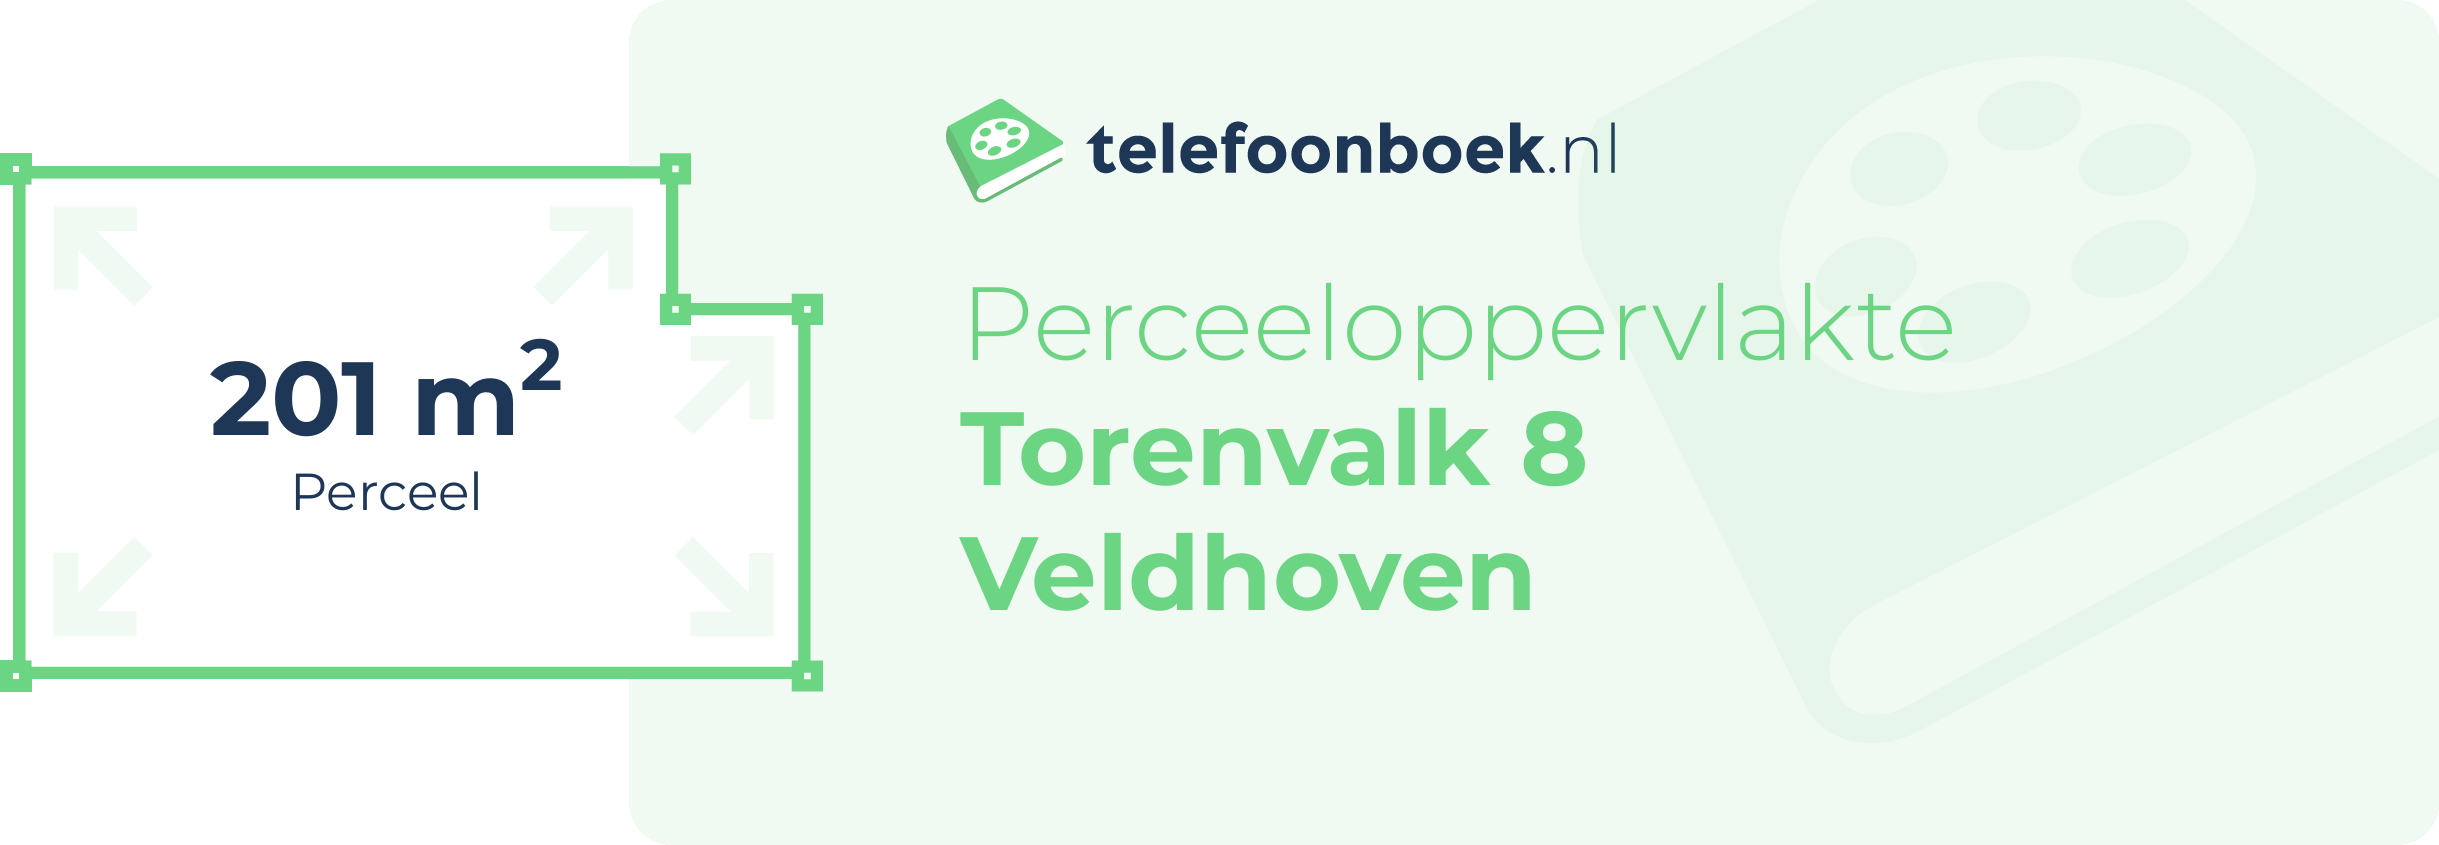 Perceeloppervlakte Torenvalk 8 Veldhoven